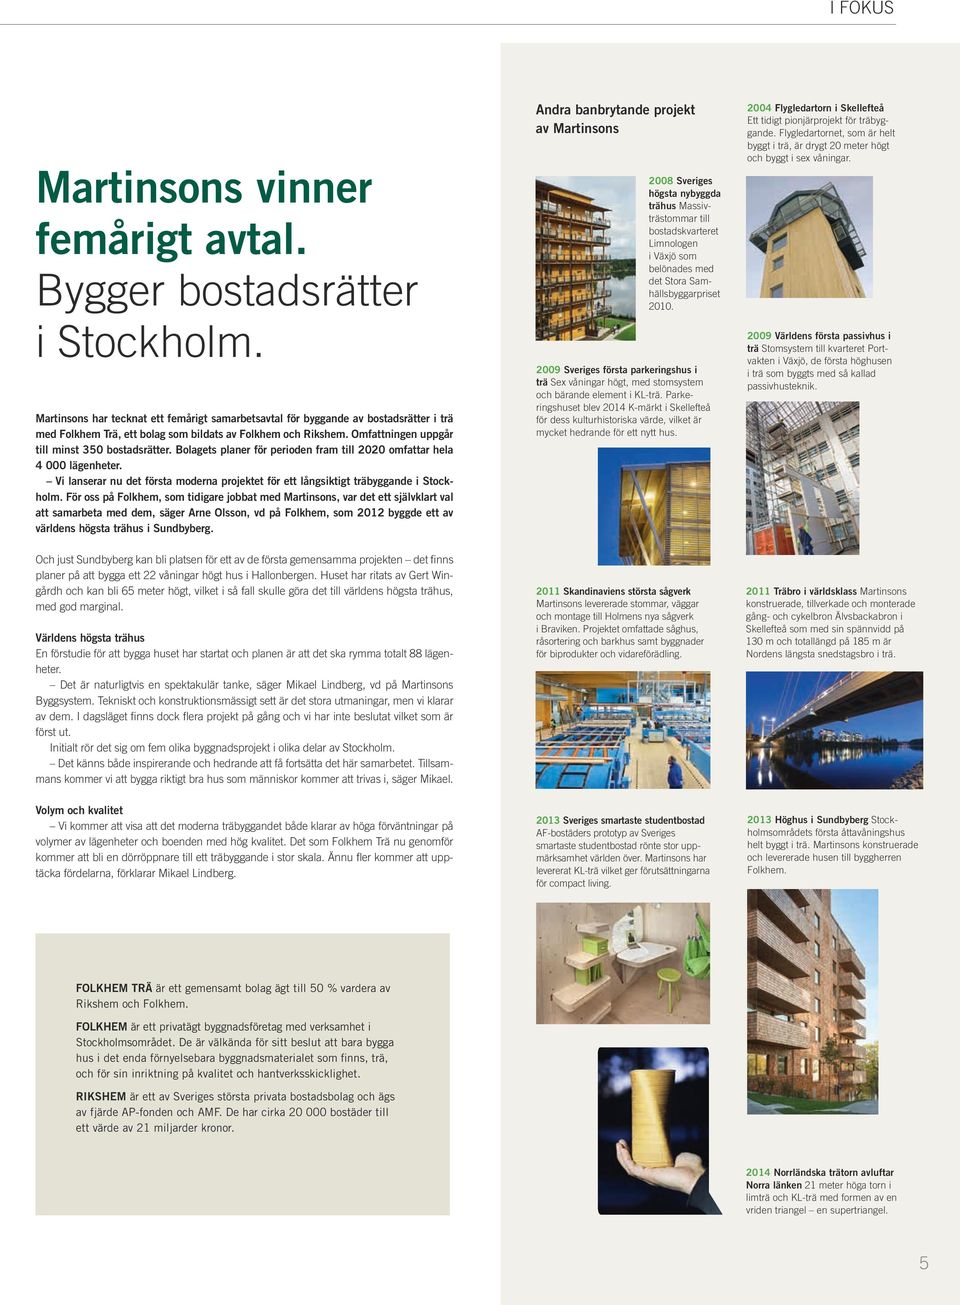 Bolagets planer för perioden fram till 2020 omfattar hela 4 000 lägenheter. Vi lanserar nu det första moderna projektet för ett långsiktigt träbyggande i Stockholm.